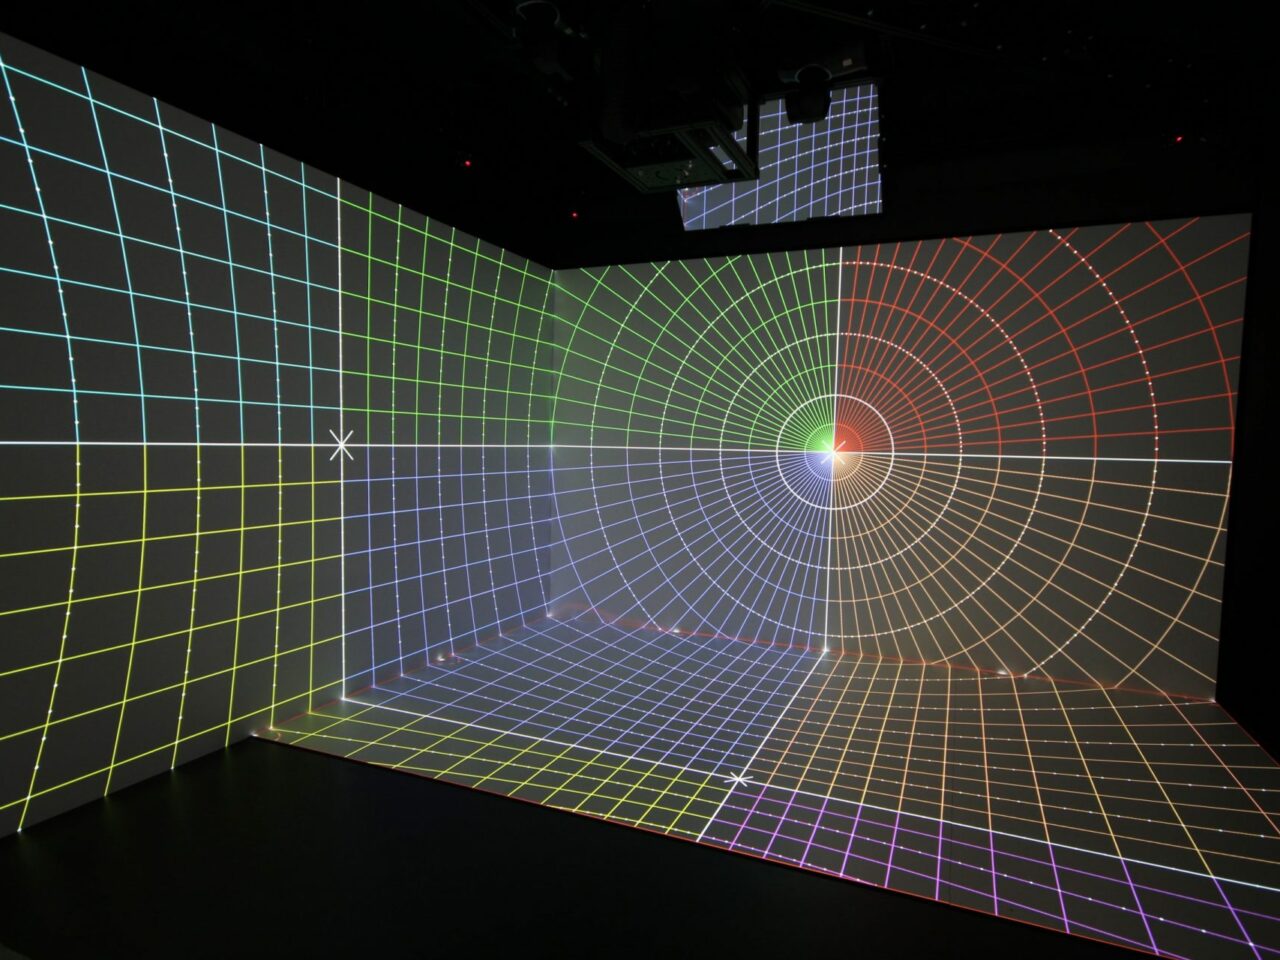 Eine VR Cave wird dargestellt, wobei eine Zielscheibe in der virtuellen Umgebung hervorgehoben wird. Dieses Bild vermittelt den Eindruck, dass die VR-Technologie für Training oder Simulationen genutzt wird, bei denen Präzision und Treffsicherheit eine Rolle spielen.